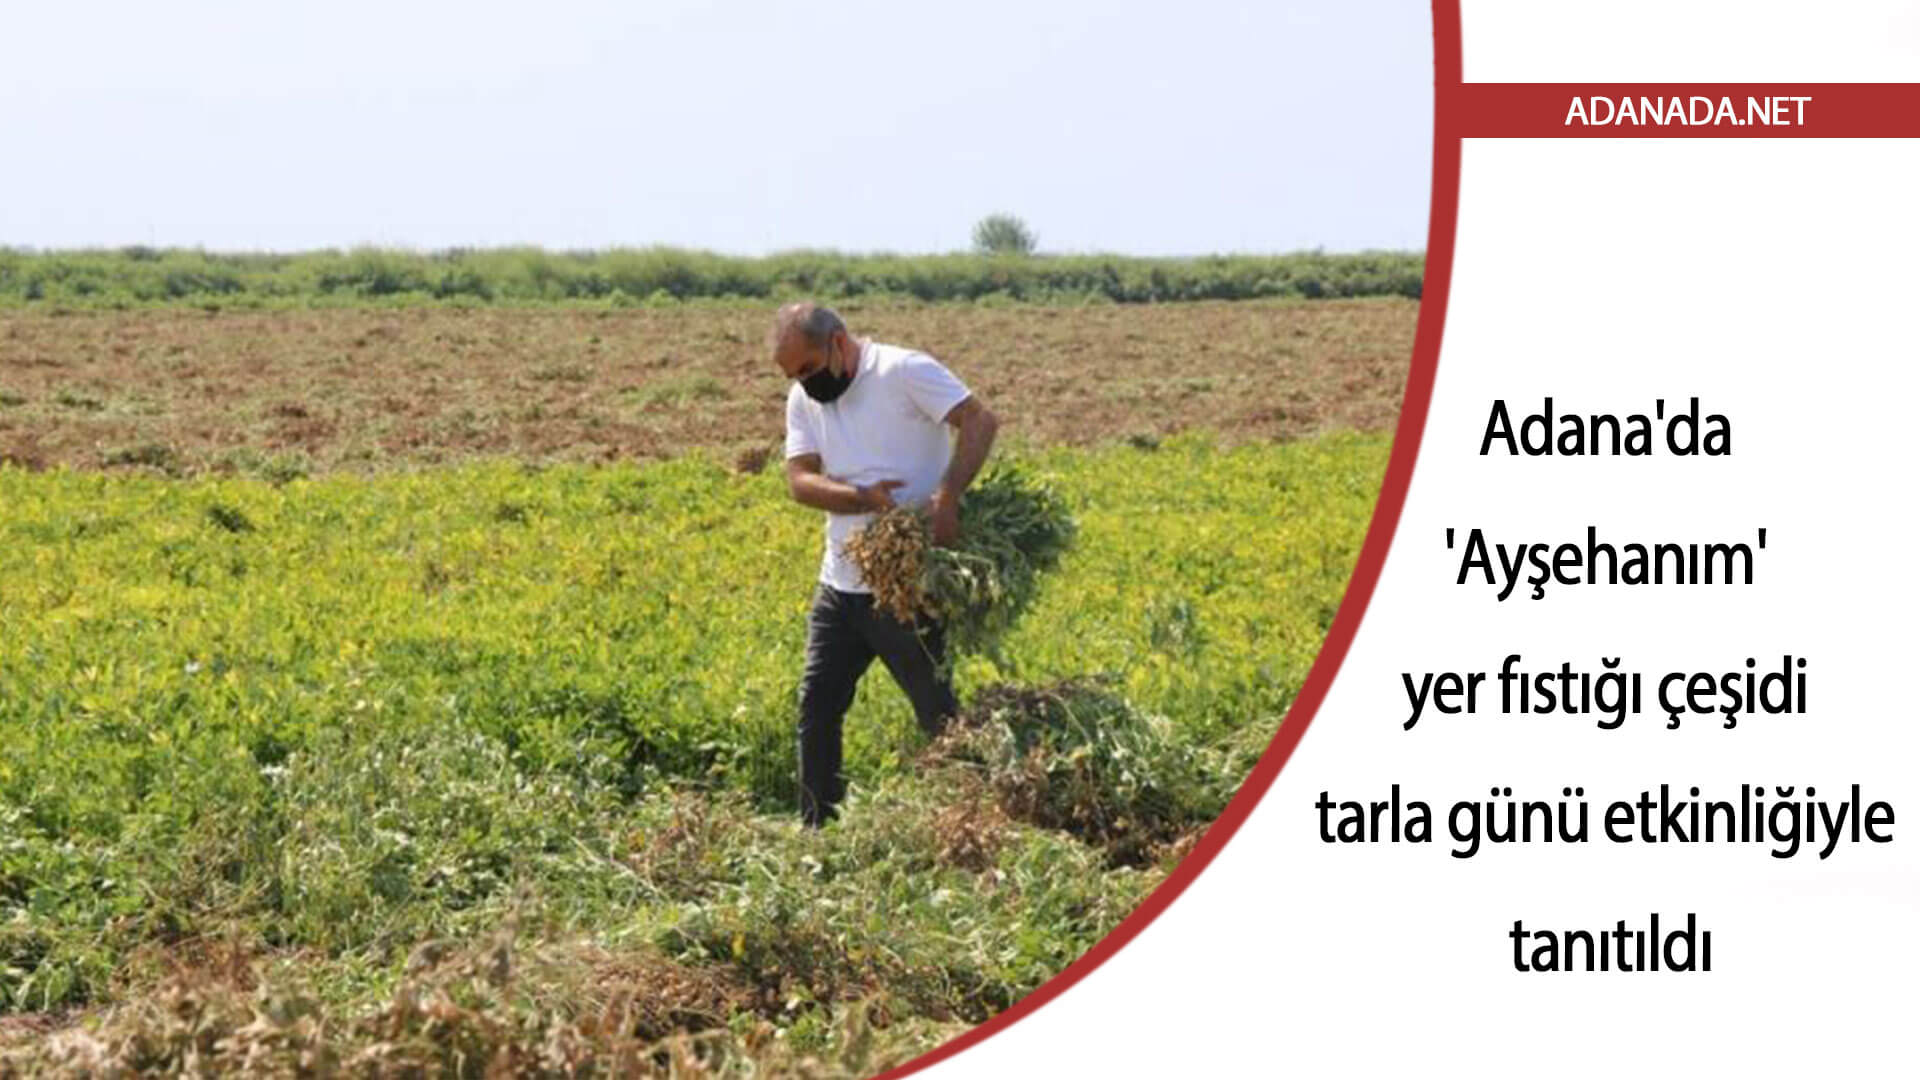 Adana’da ‘Ayşehanım’ yer fıstığı çeşidi tarla günü etkinliğiyle tanıtıldı